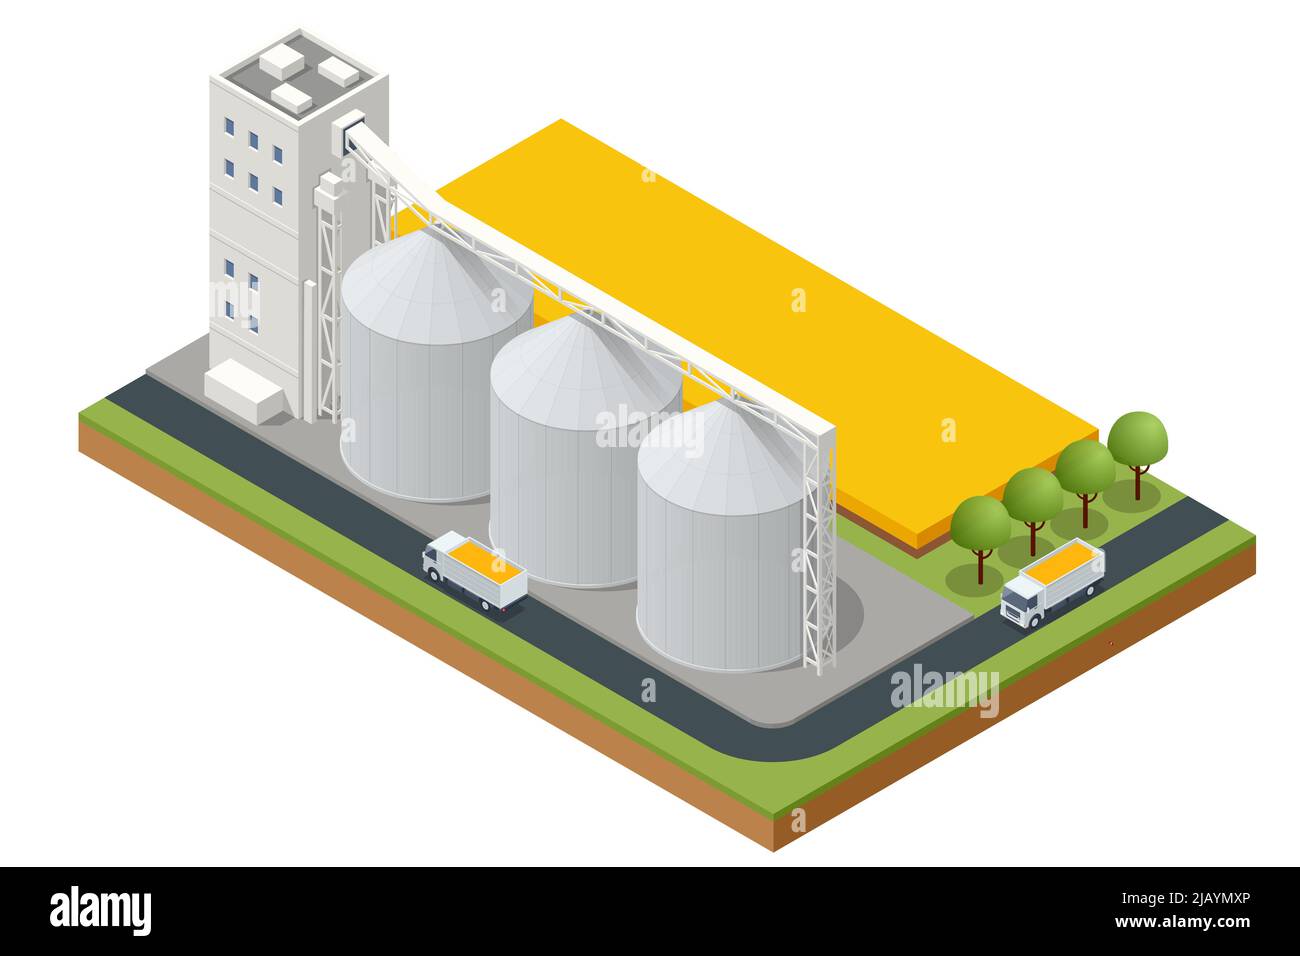 Isometric Grain Elevator Silos. Transport von landwirtschaftlichen Erzeugnissen. Maistrocknersilos, Getreideanschlussanlage im Binnenland. Getreideaufzüge stehen auf einem Feld Stock Vektor